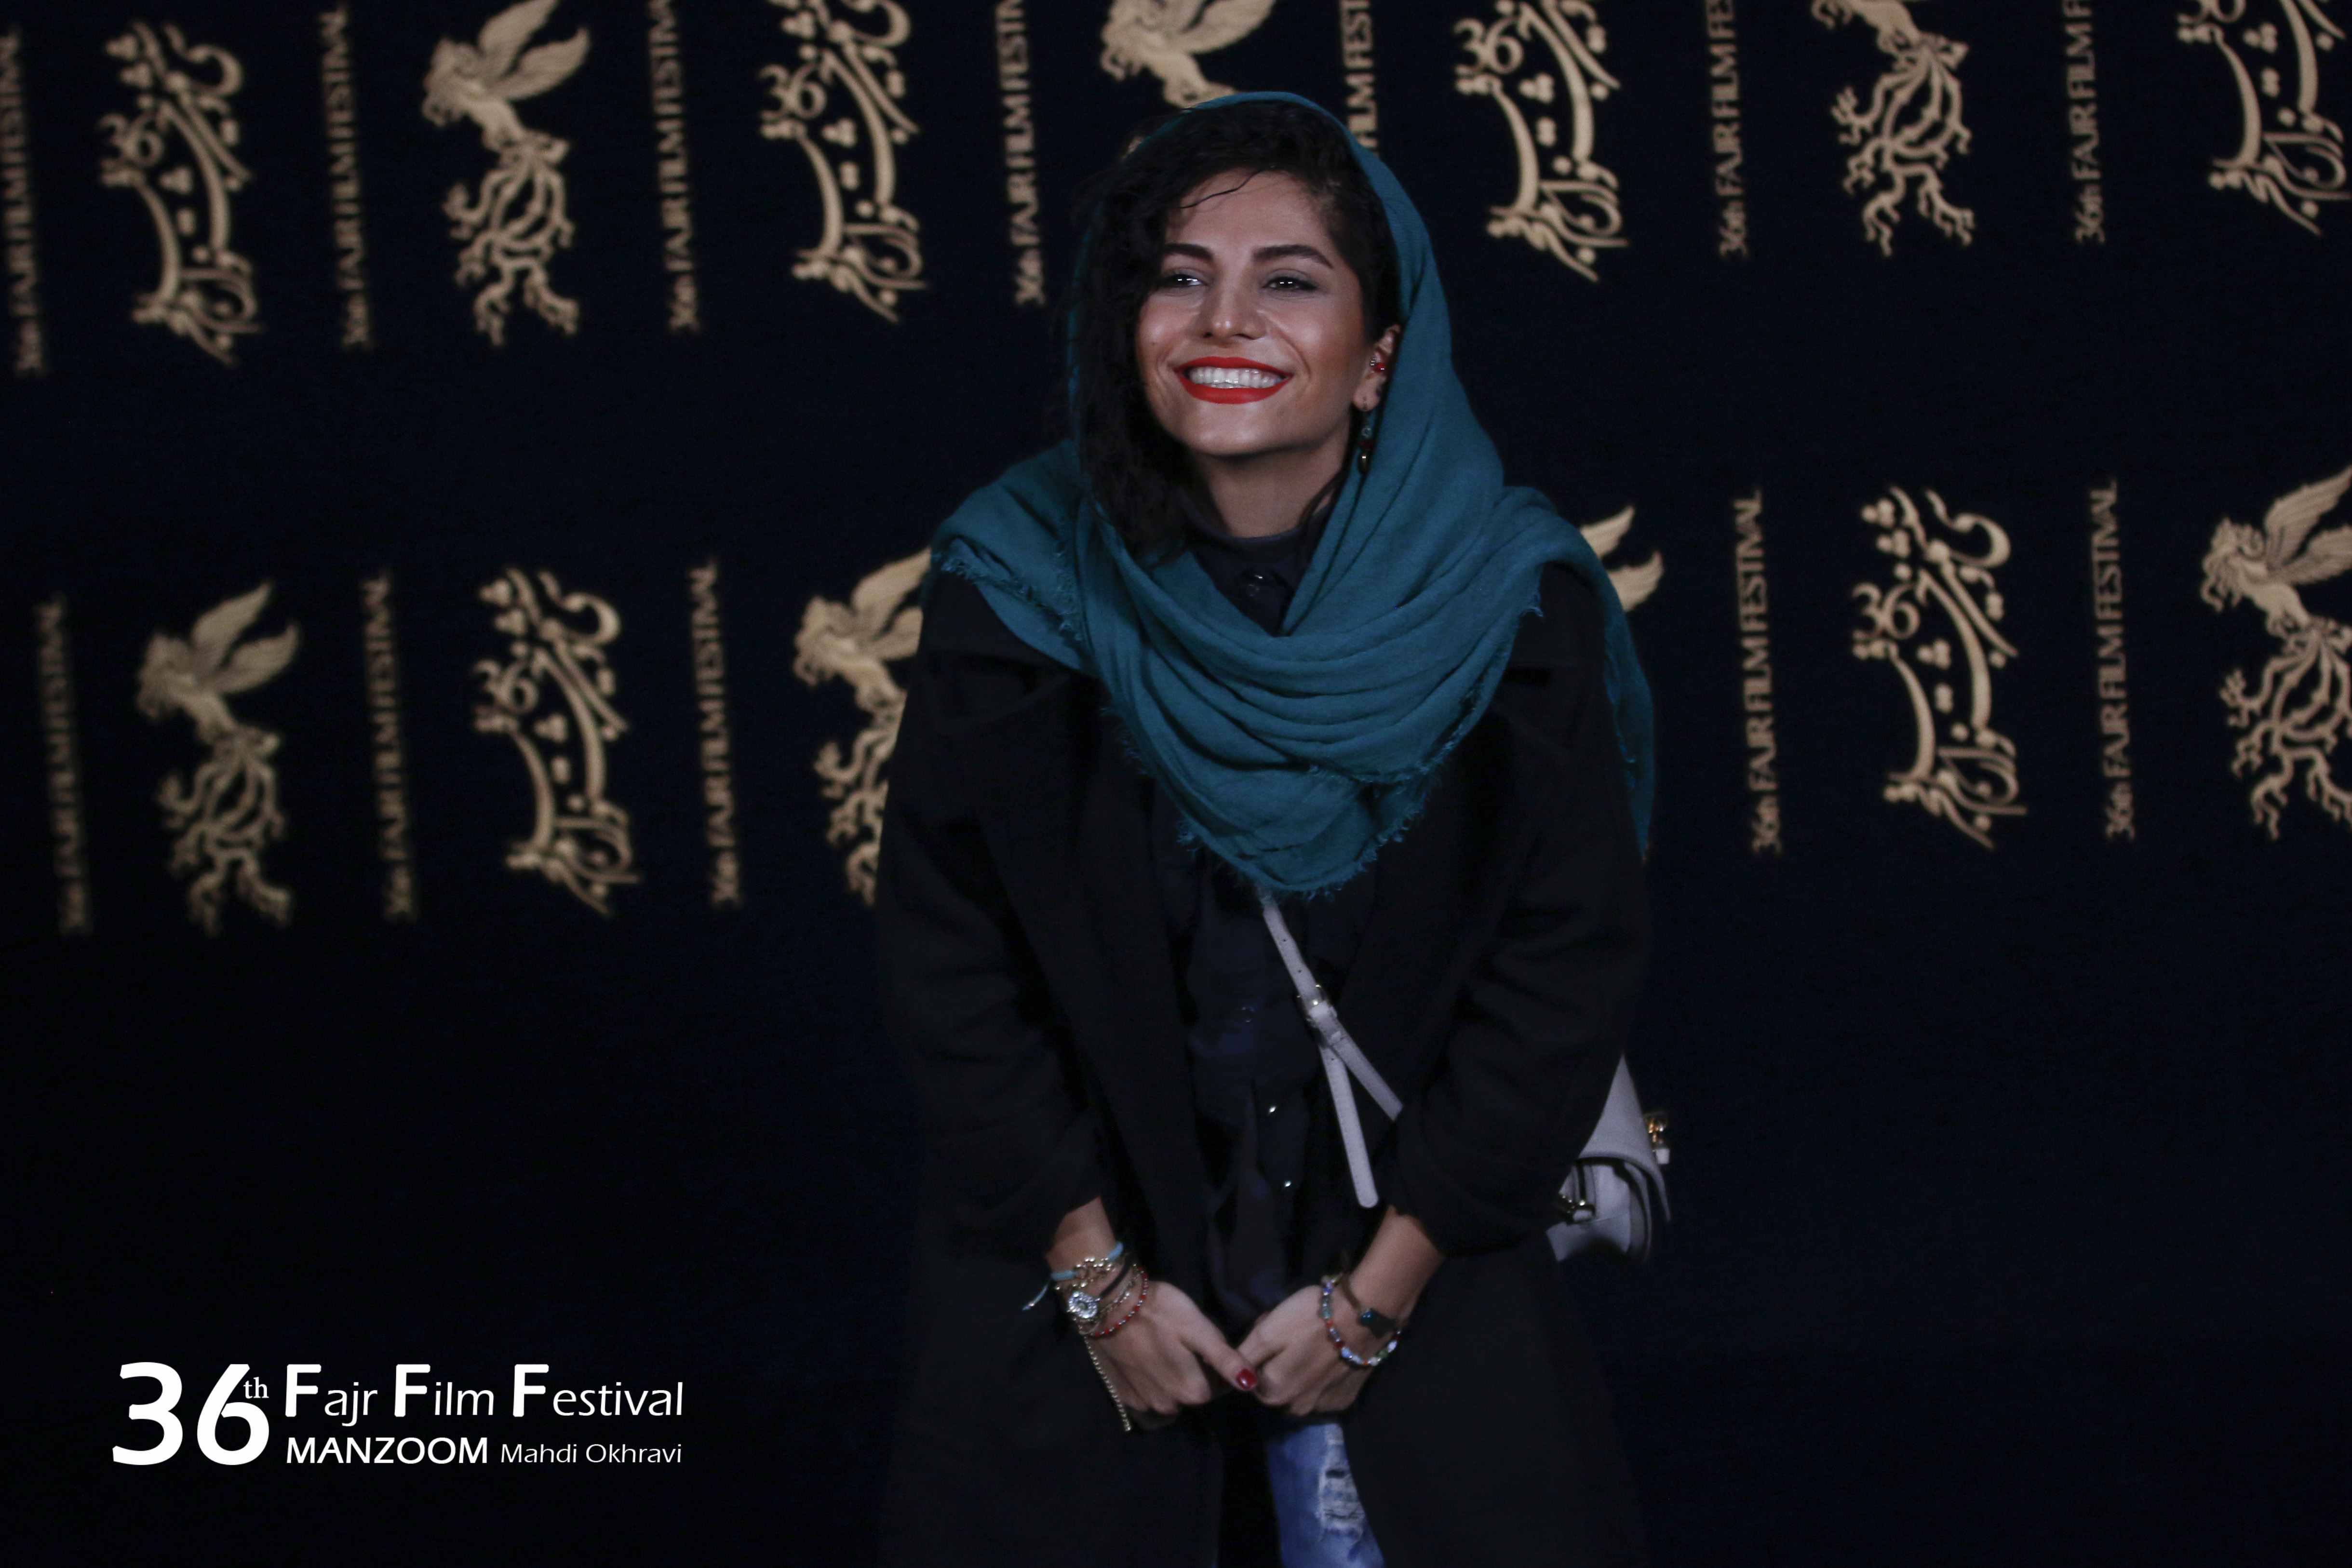 مروارید کاشیان در جشنواره فیلم سینمایی اتاق تاریک